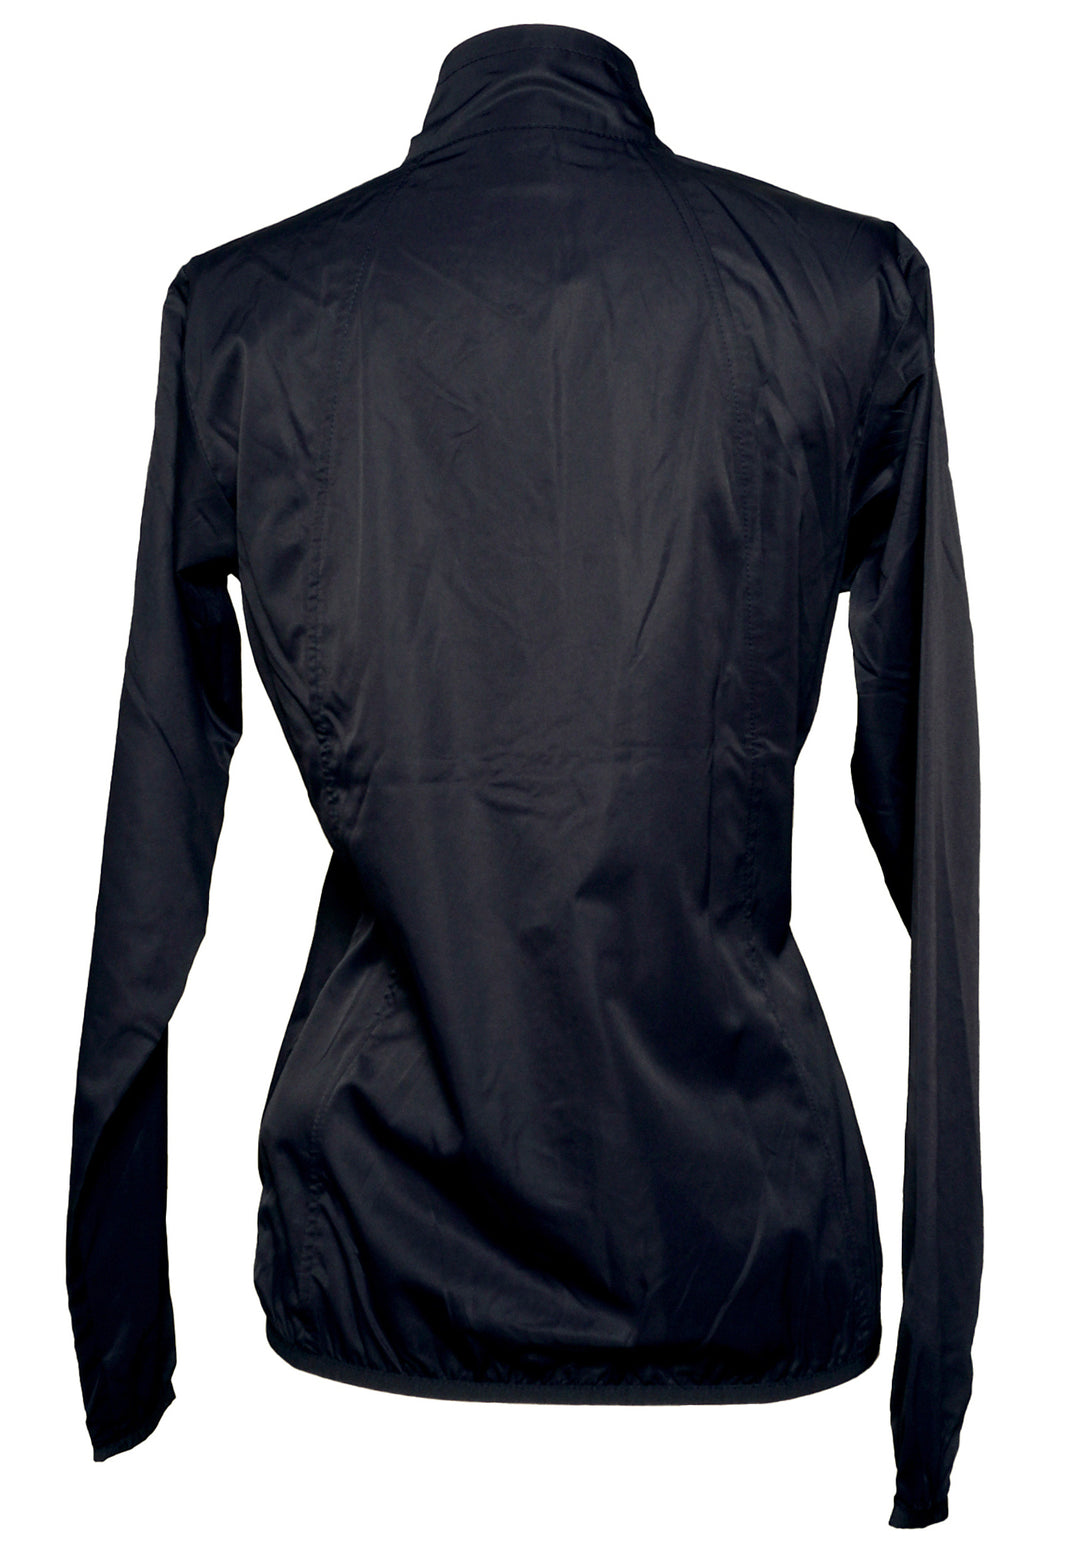 Daily Sports Mia Wind Jacket - Black - Size Small - Skorzie